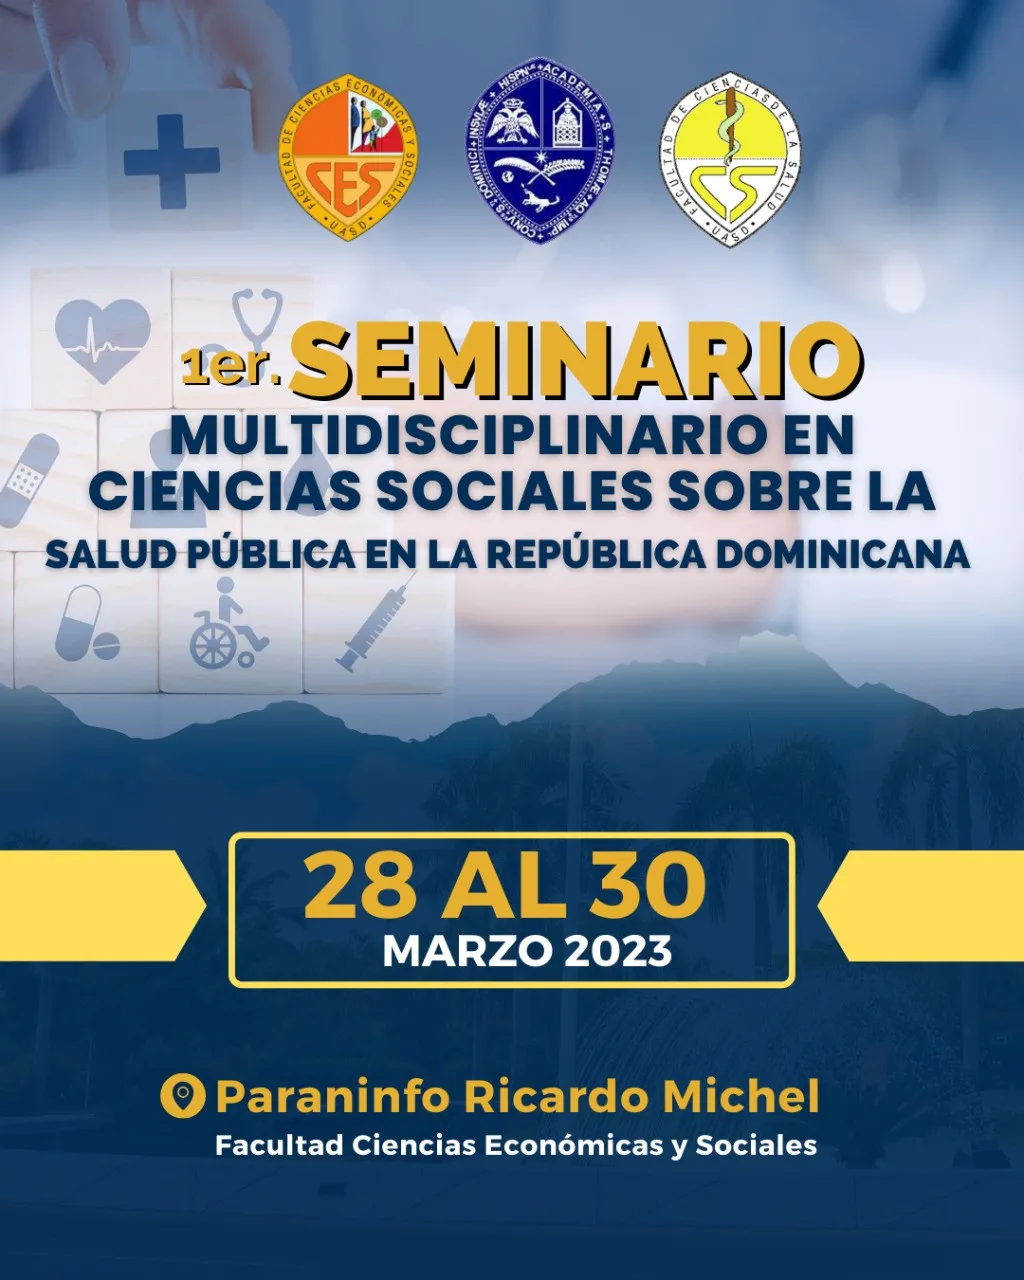 Primer seminario multidisciplinario en ciencias sociales sobre la salud